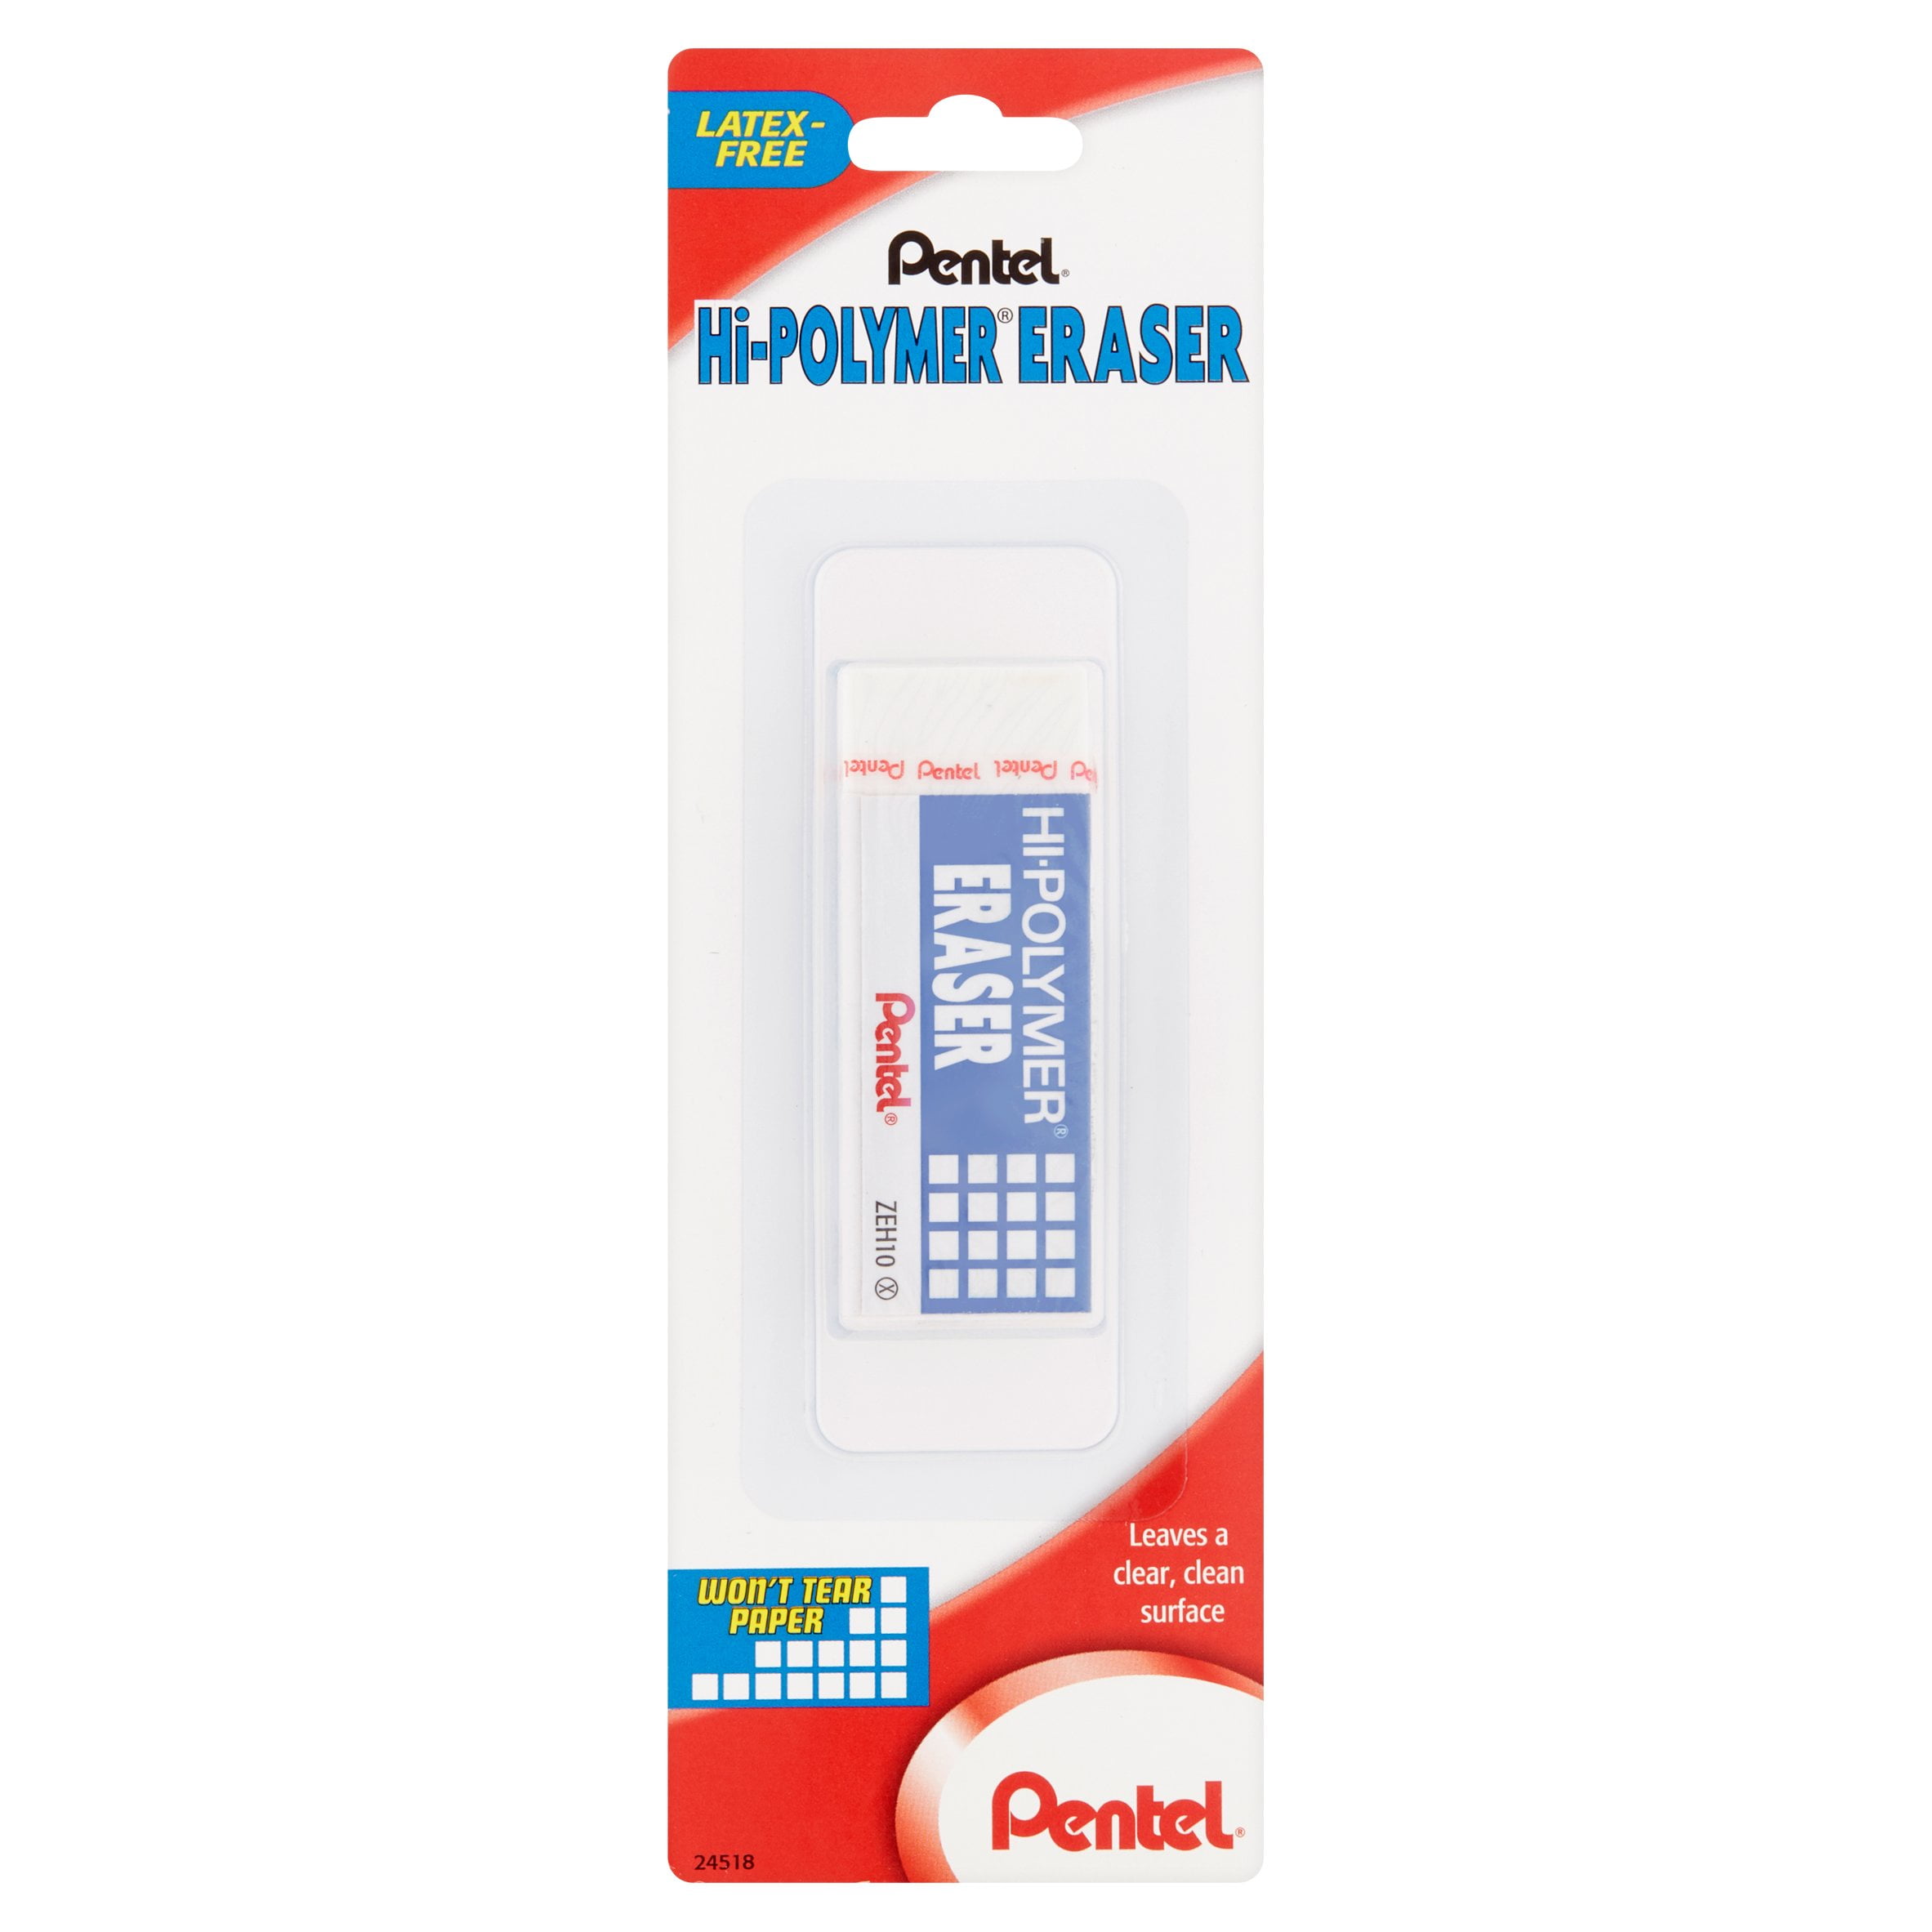 Pentel Hi Polymer Erasers Block Lot of 19 White Erasers - New